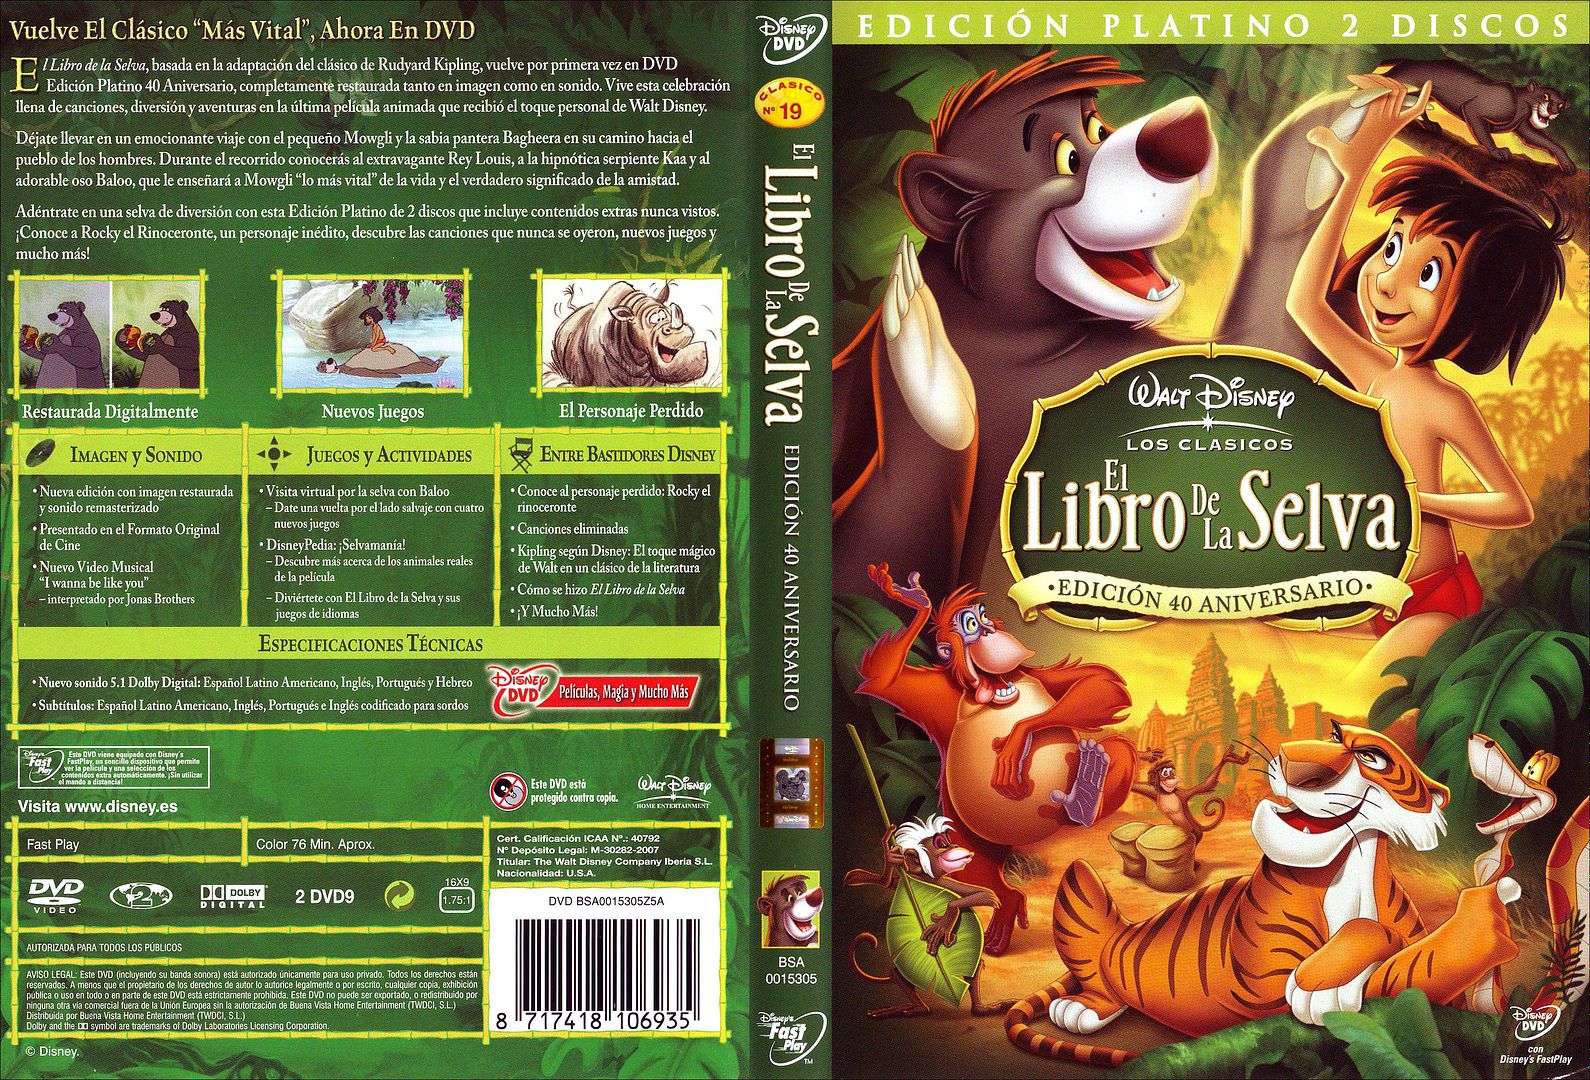 El Libro De La Selva   Clasicos Disney 19   Edicion Platino por Jenova - El Libro de la Selva (1967) (Animacion) (DVDRip) (Castellano)